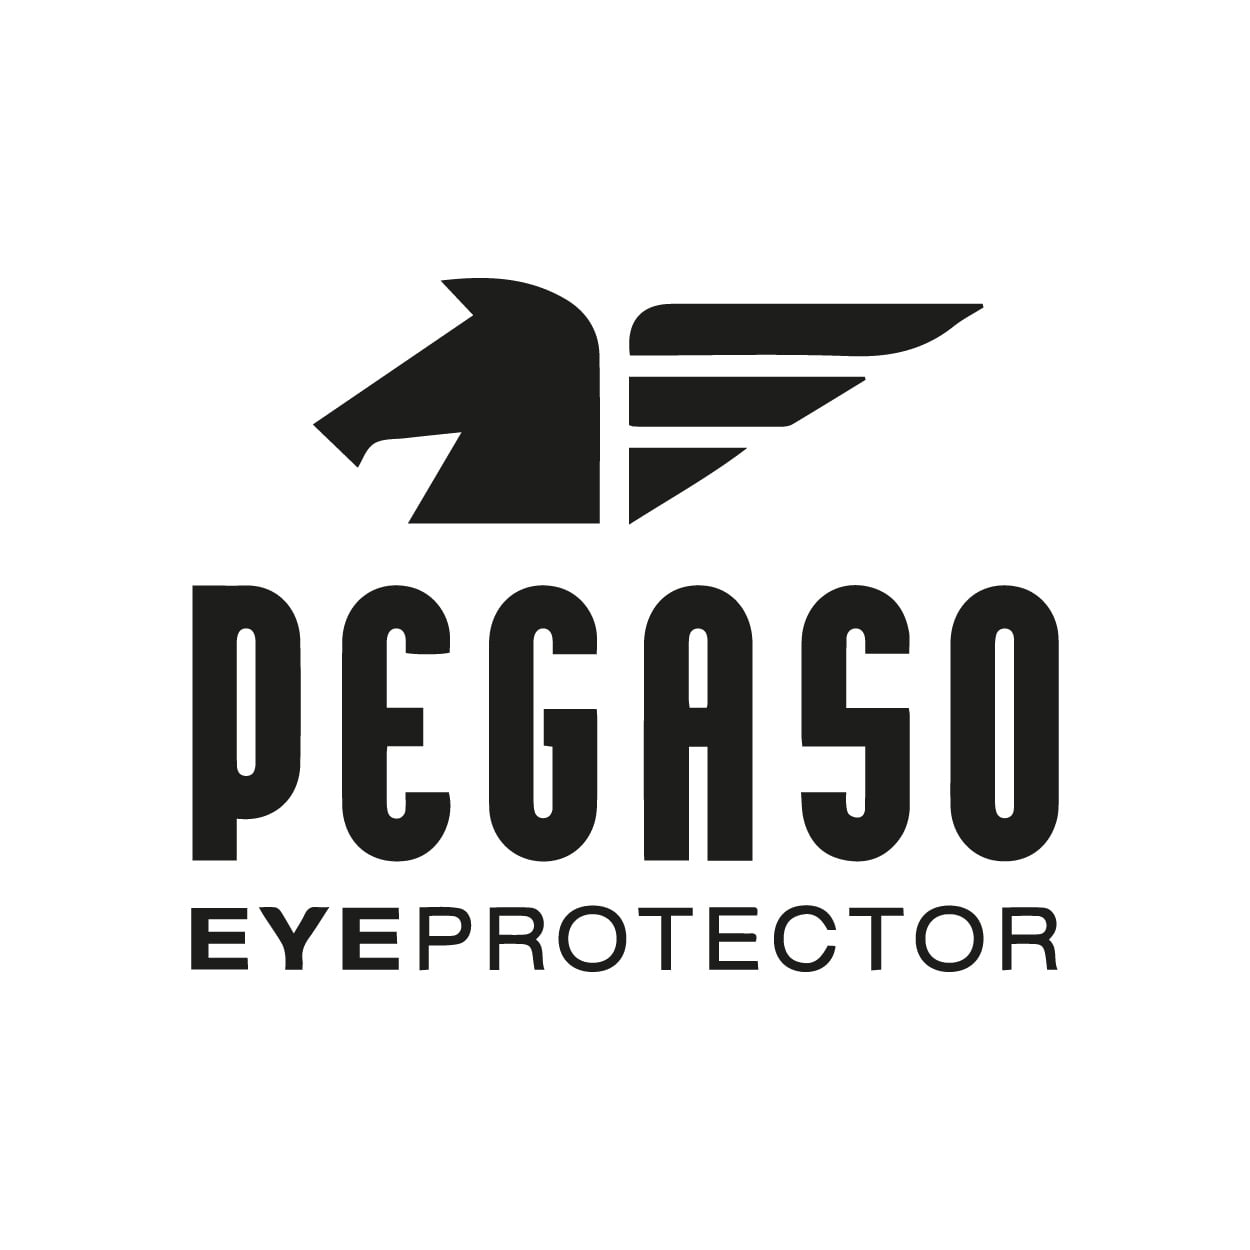 Pegaso eye protector protección ocular y salud visual. Equipos de protección individual